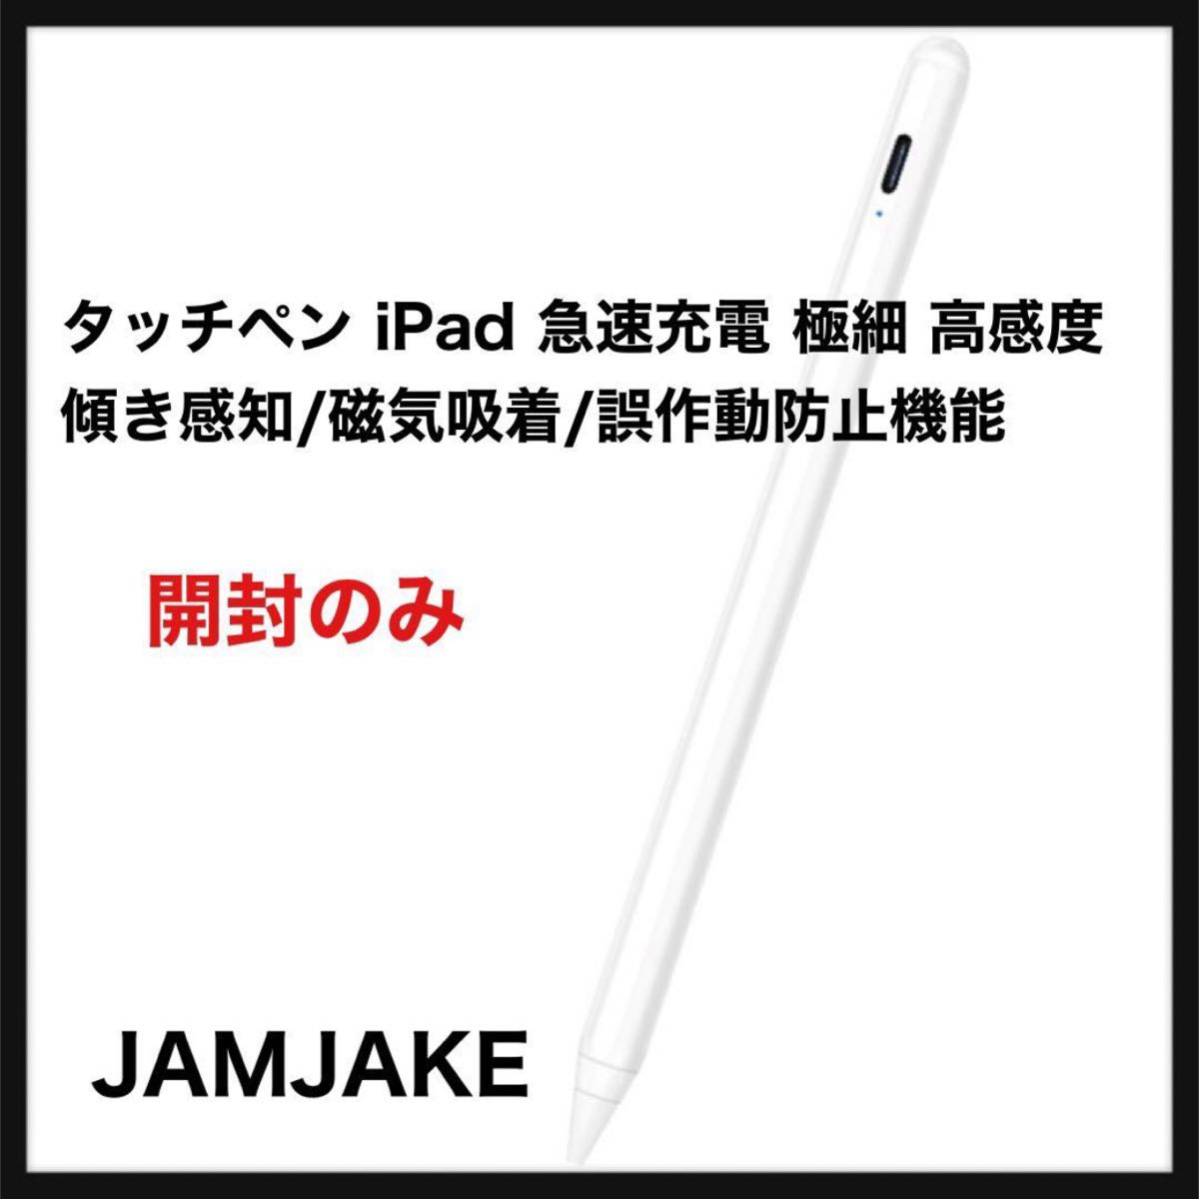 【開封のみ】JAMJAKE◆タッチペン iPad ペン 急速充電 スタイラスペン 極細 高感度 iPad pencil 傾き感知/磁気吸着/誤作動防止機能対応◆_画像1